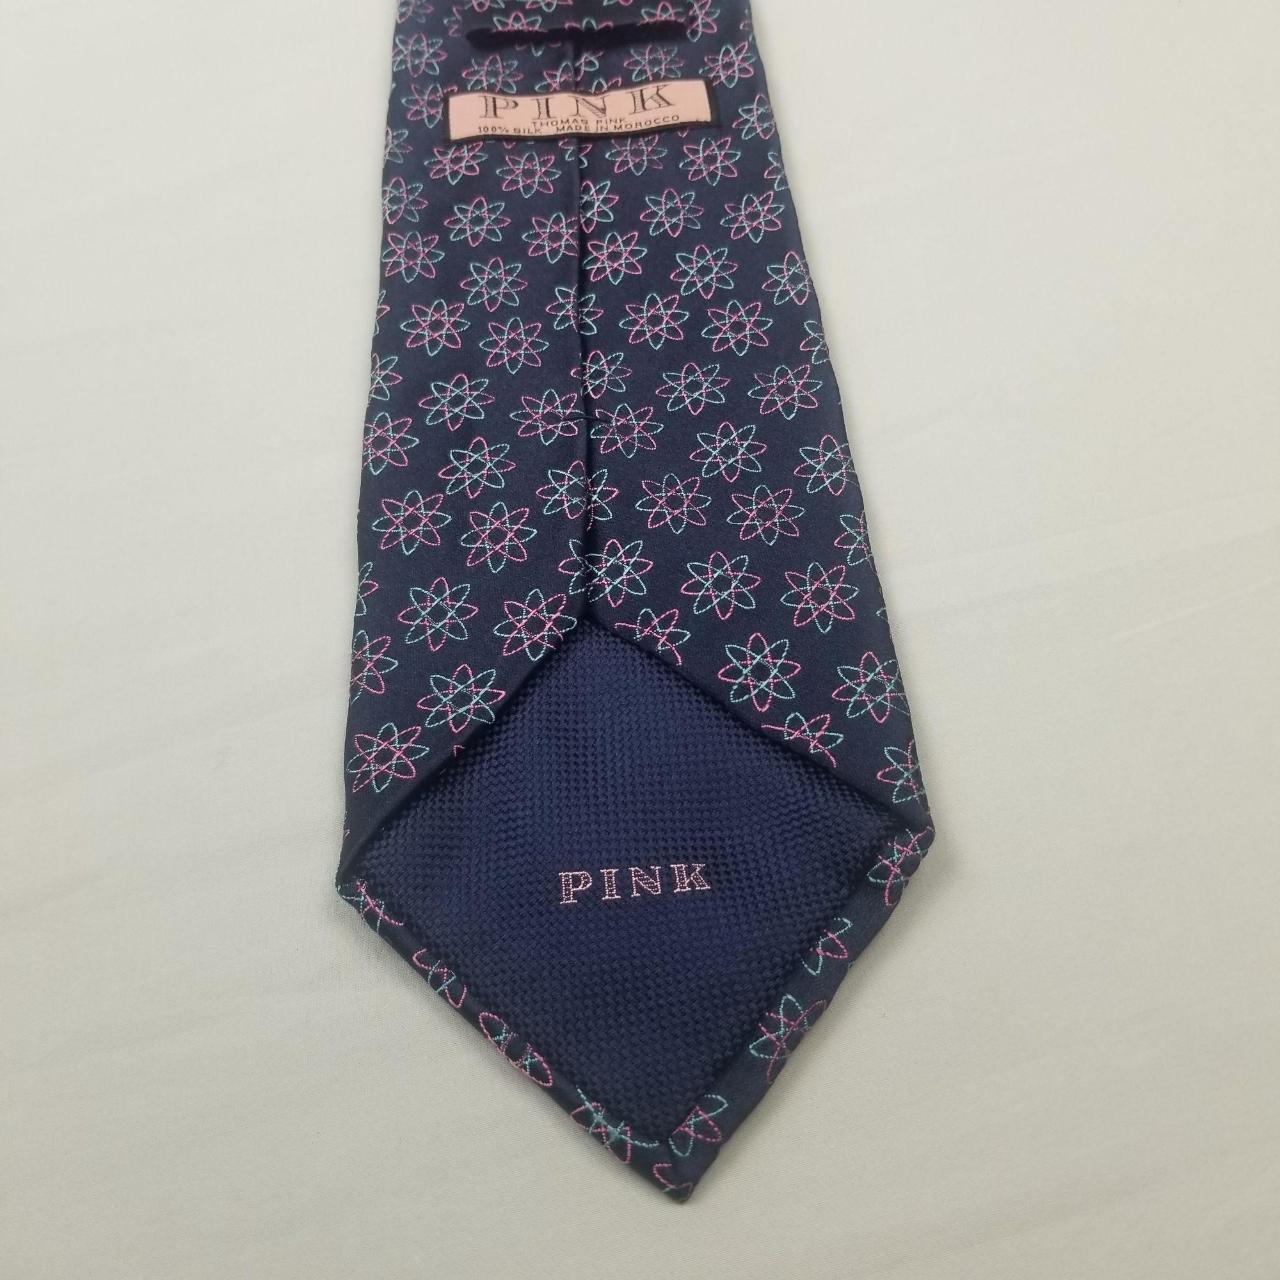 Thomas Pink Pink Ties for Men